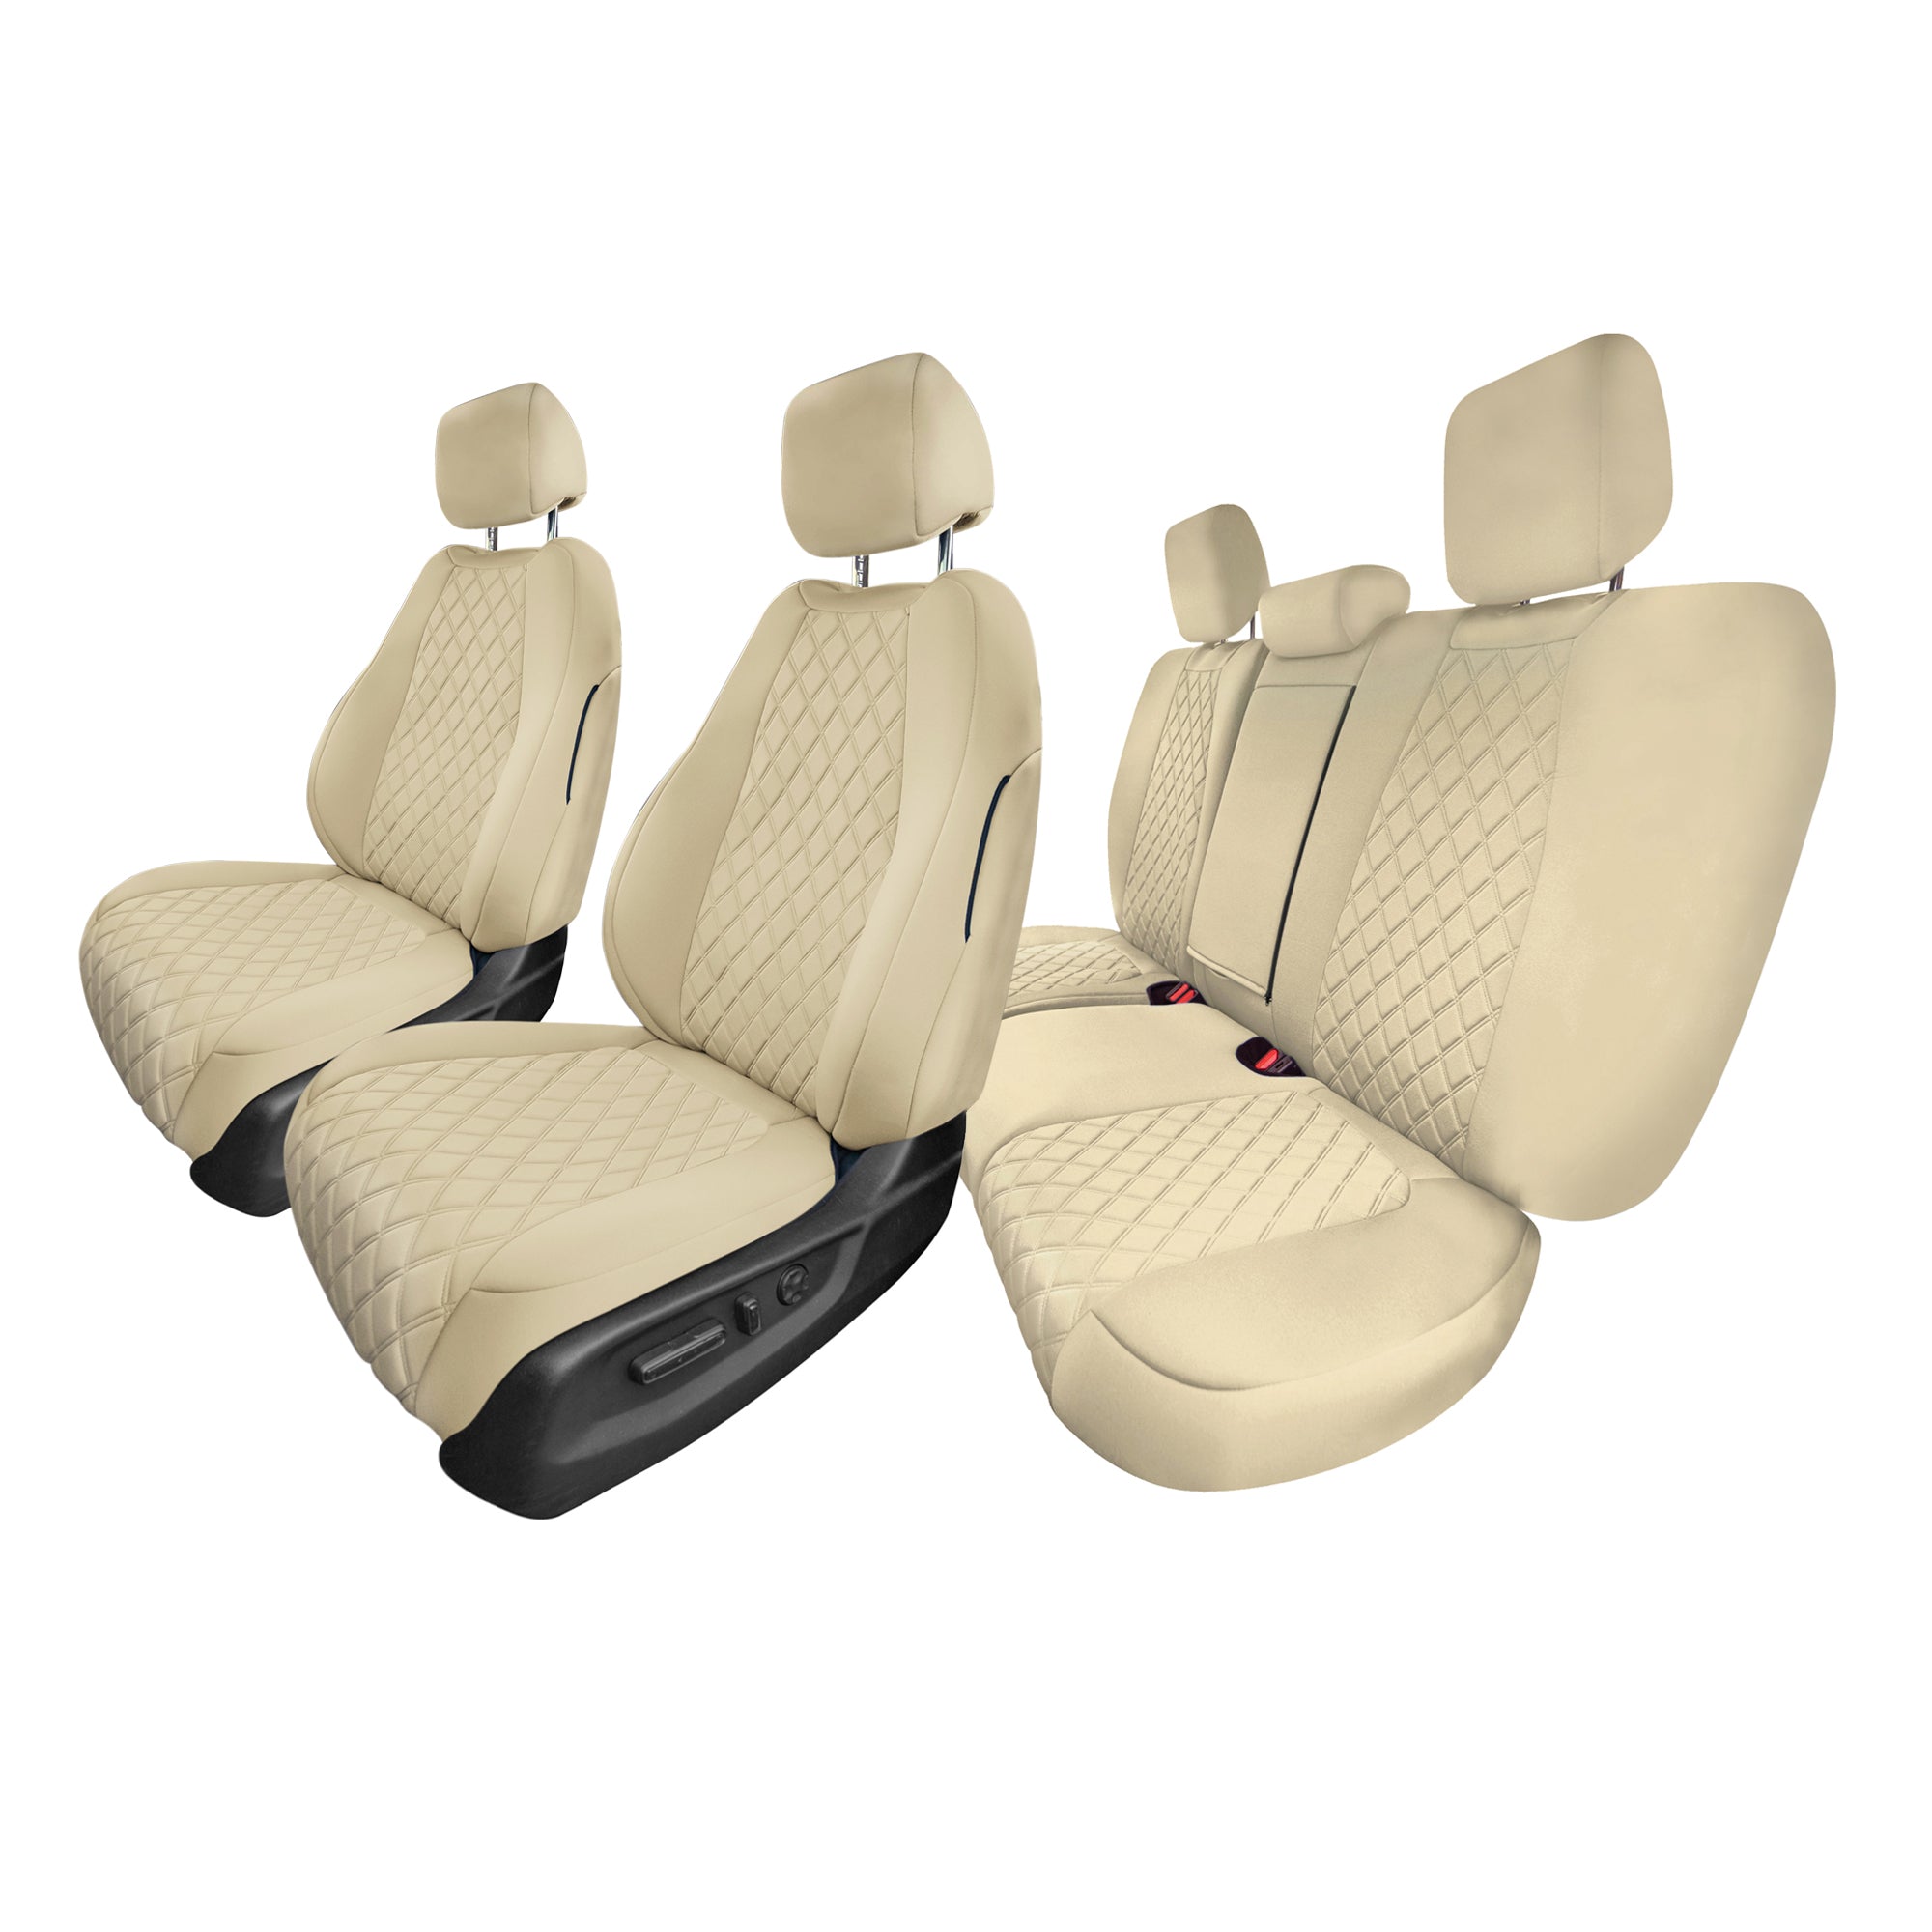 Honda CR-V 2017-2022 - Full Set Seat Covers -  Solid Beige Ultraflex Neoprene